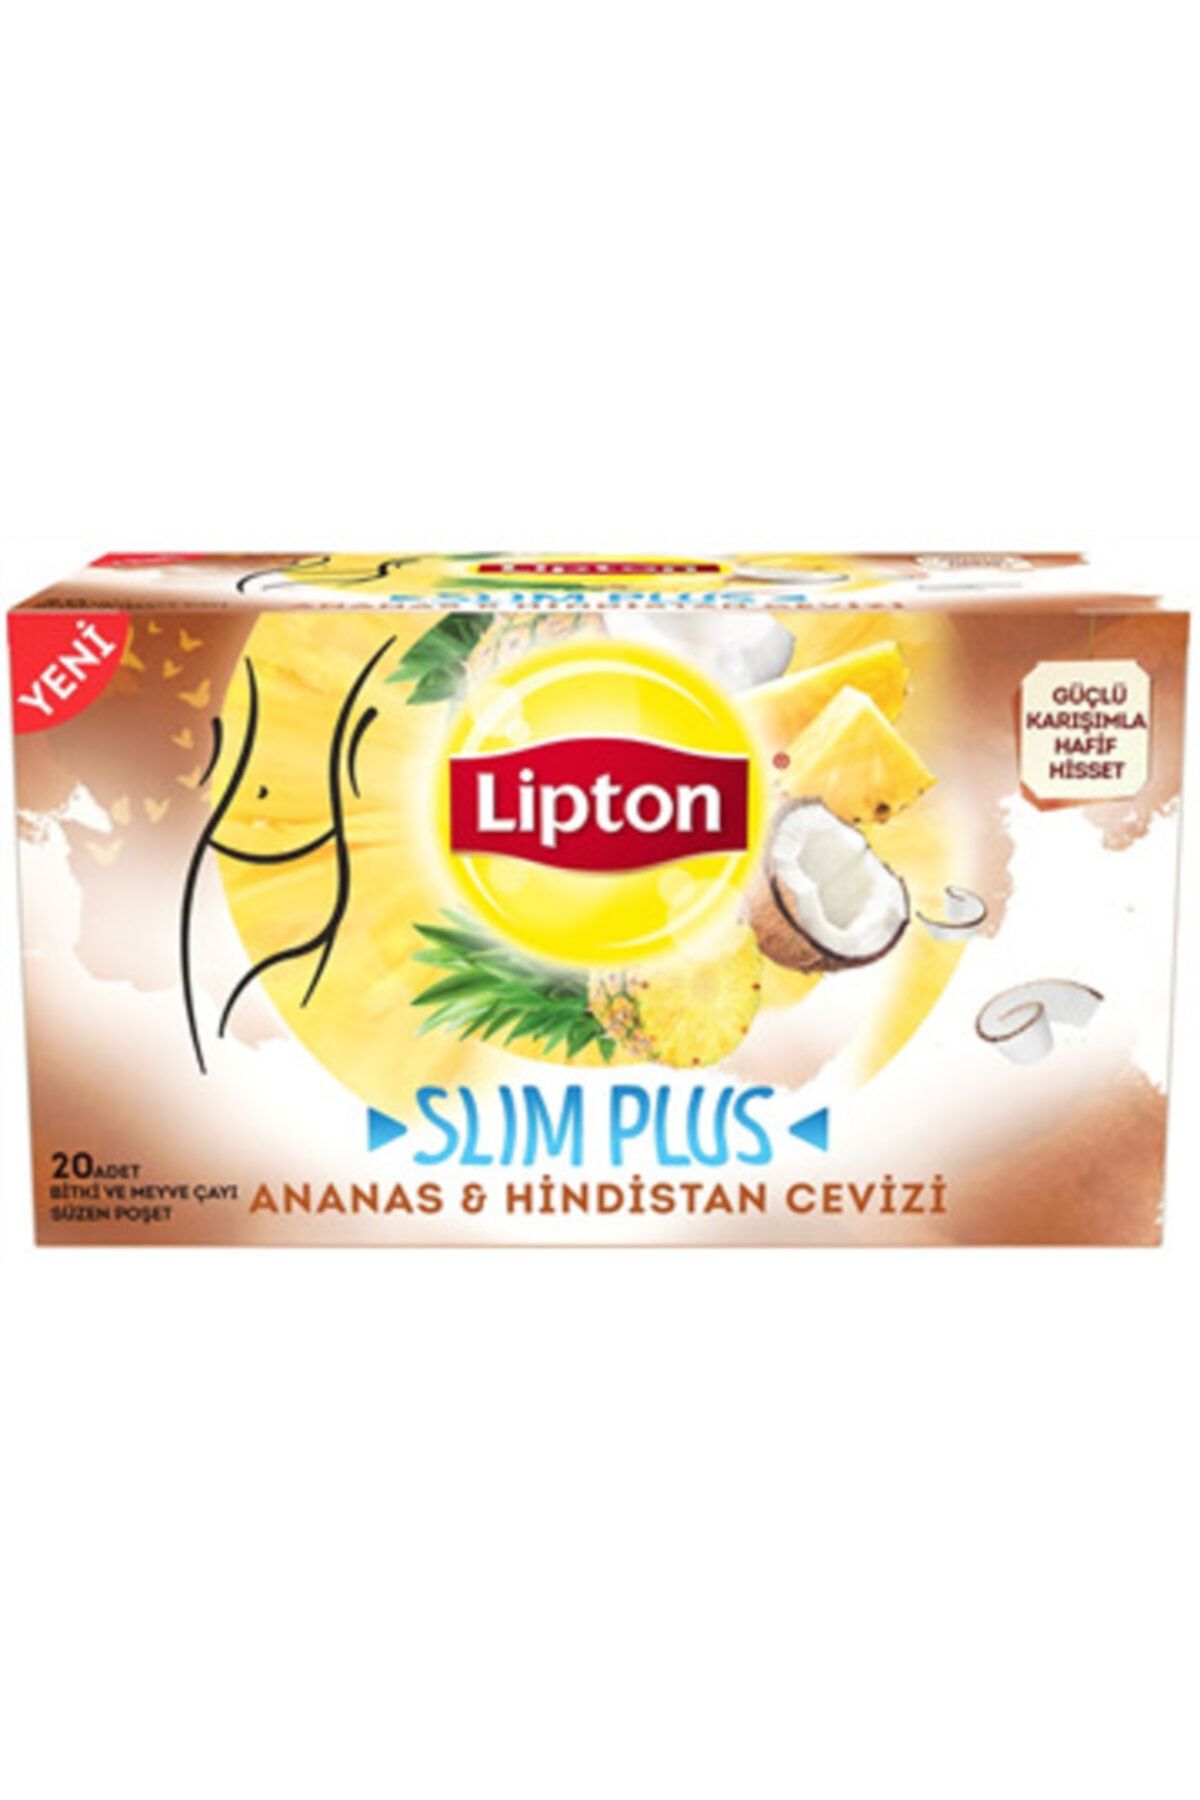 Lipton Slim Plus Ananas & Hindistan Cevizi 20'Li Bardak Poşet 34 Gr